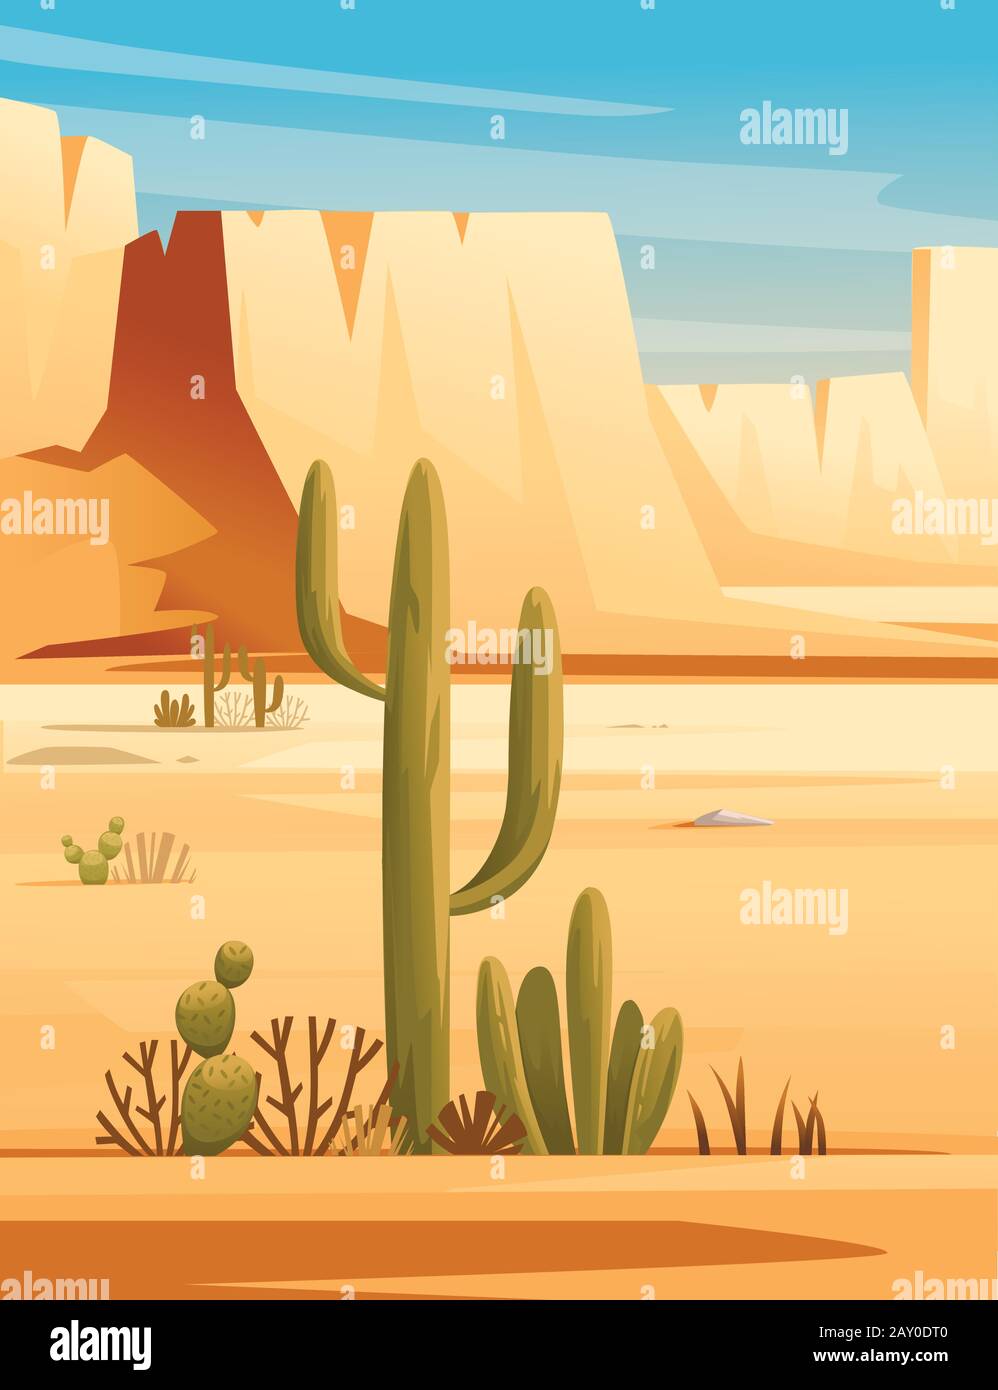 Deserto paesaggio di pietra deserto con piante e rocce sole giorno cielo blu piatto vettore illustrazione verticale. Illustrazione Vettoriale